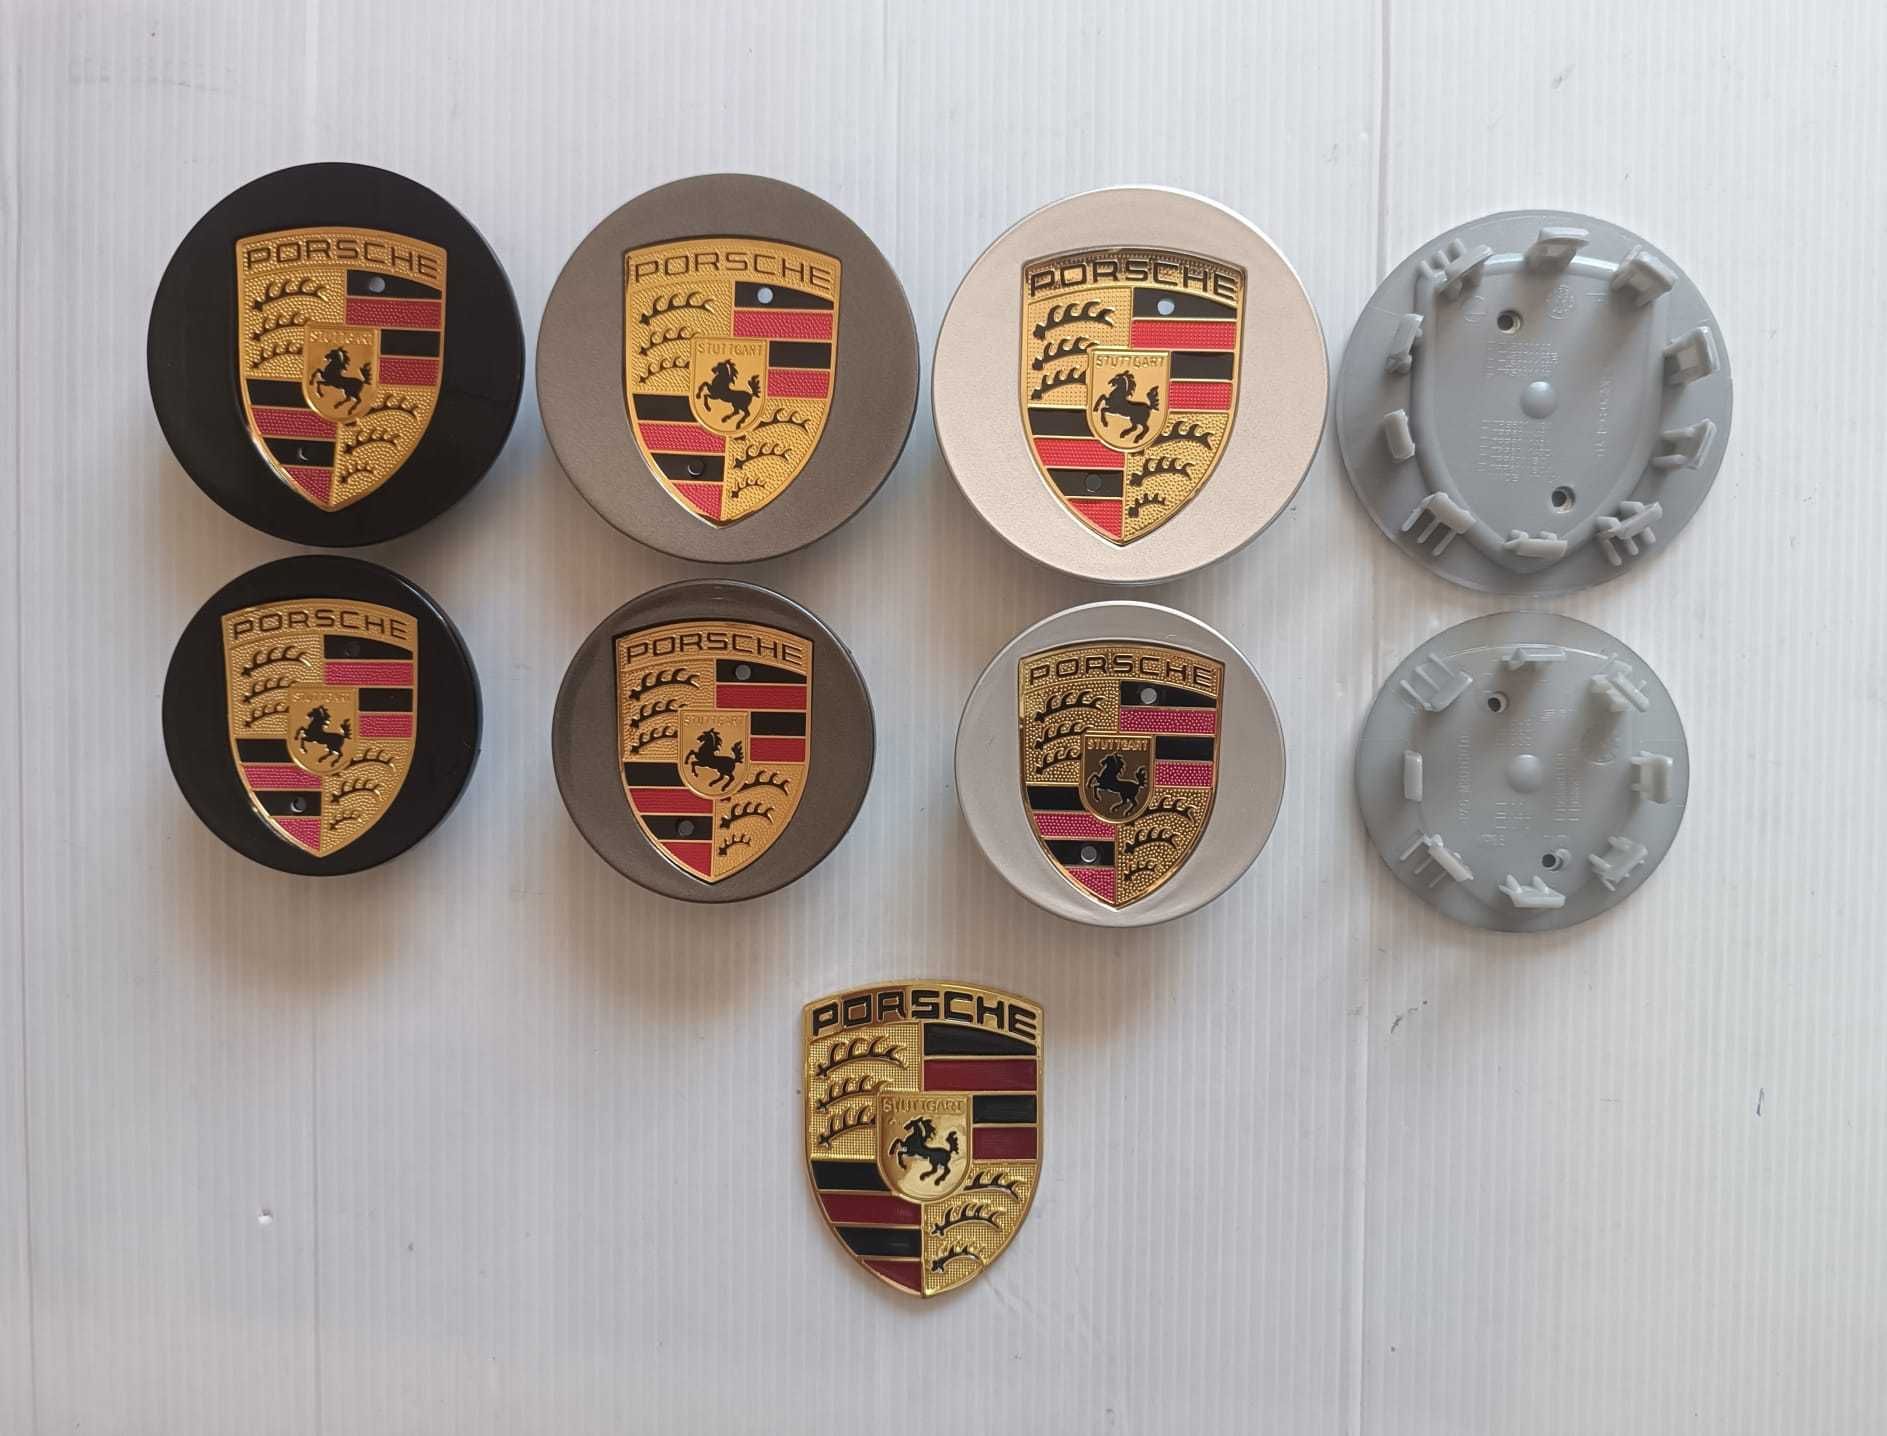 Centros/tampas de jante completos Porsche com 56, 60, 65, 68 e 76 mm